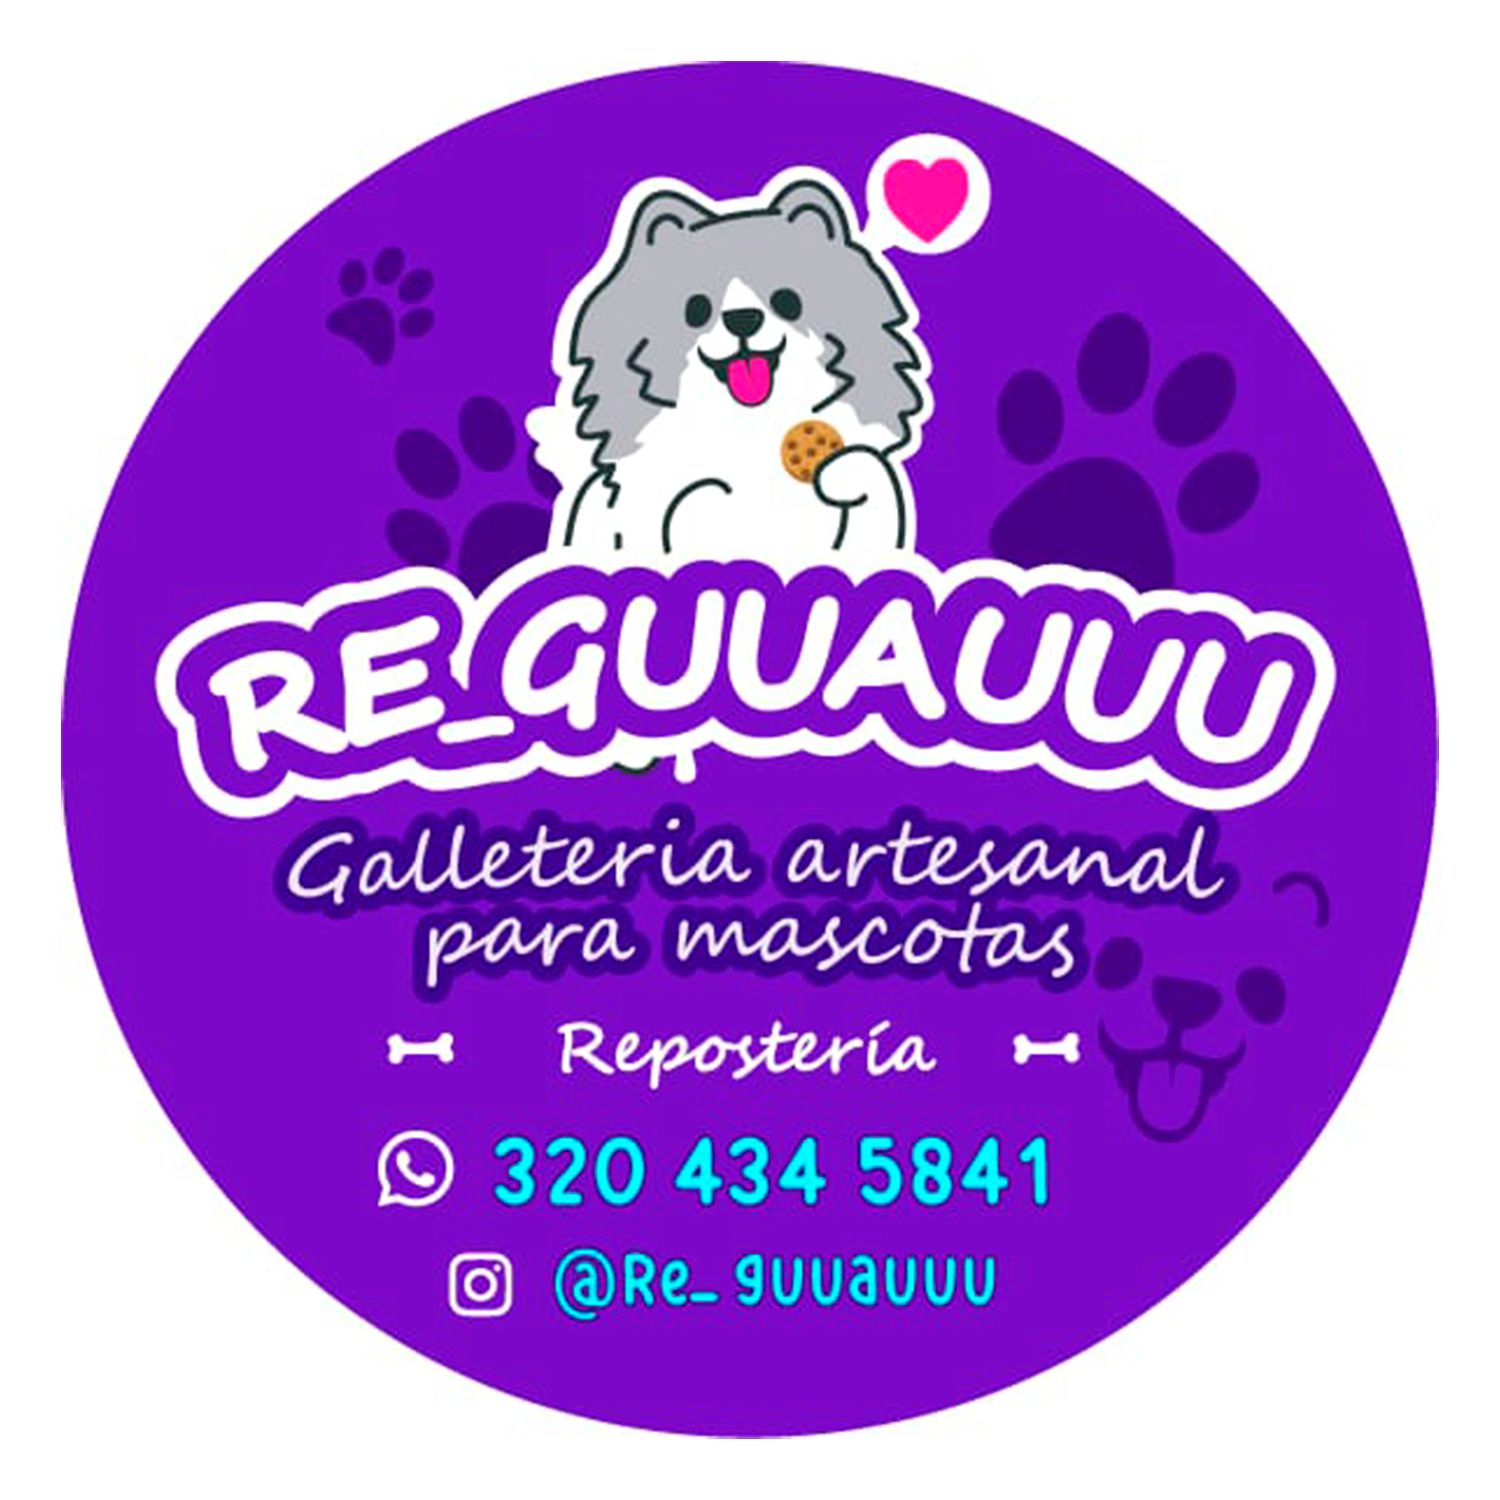 Re_guuauuu